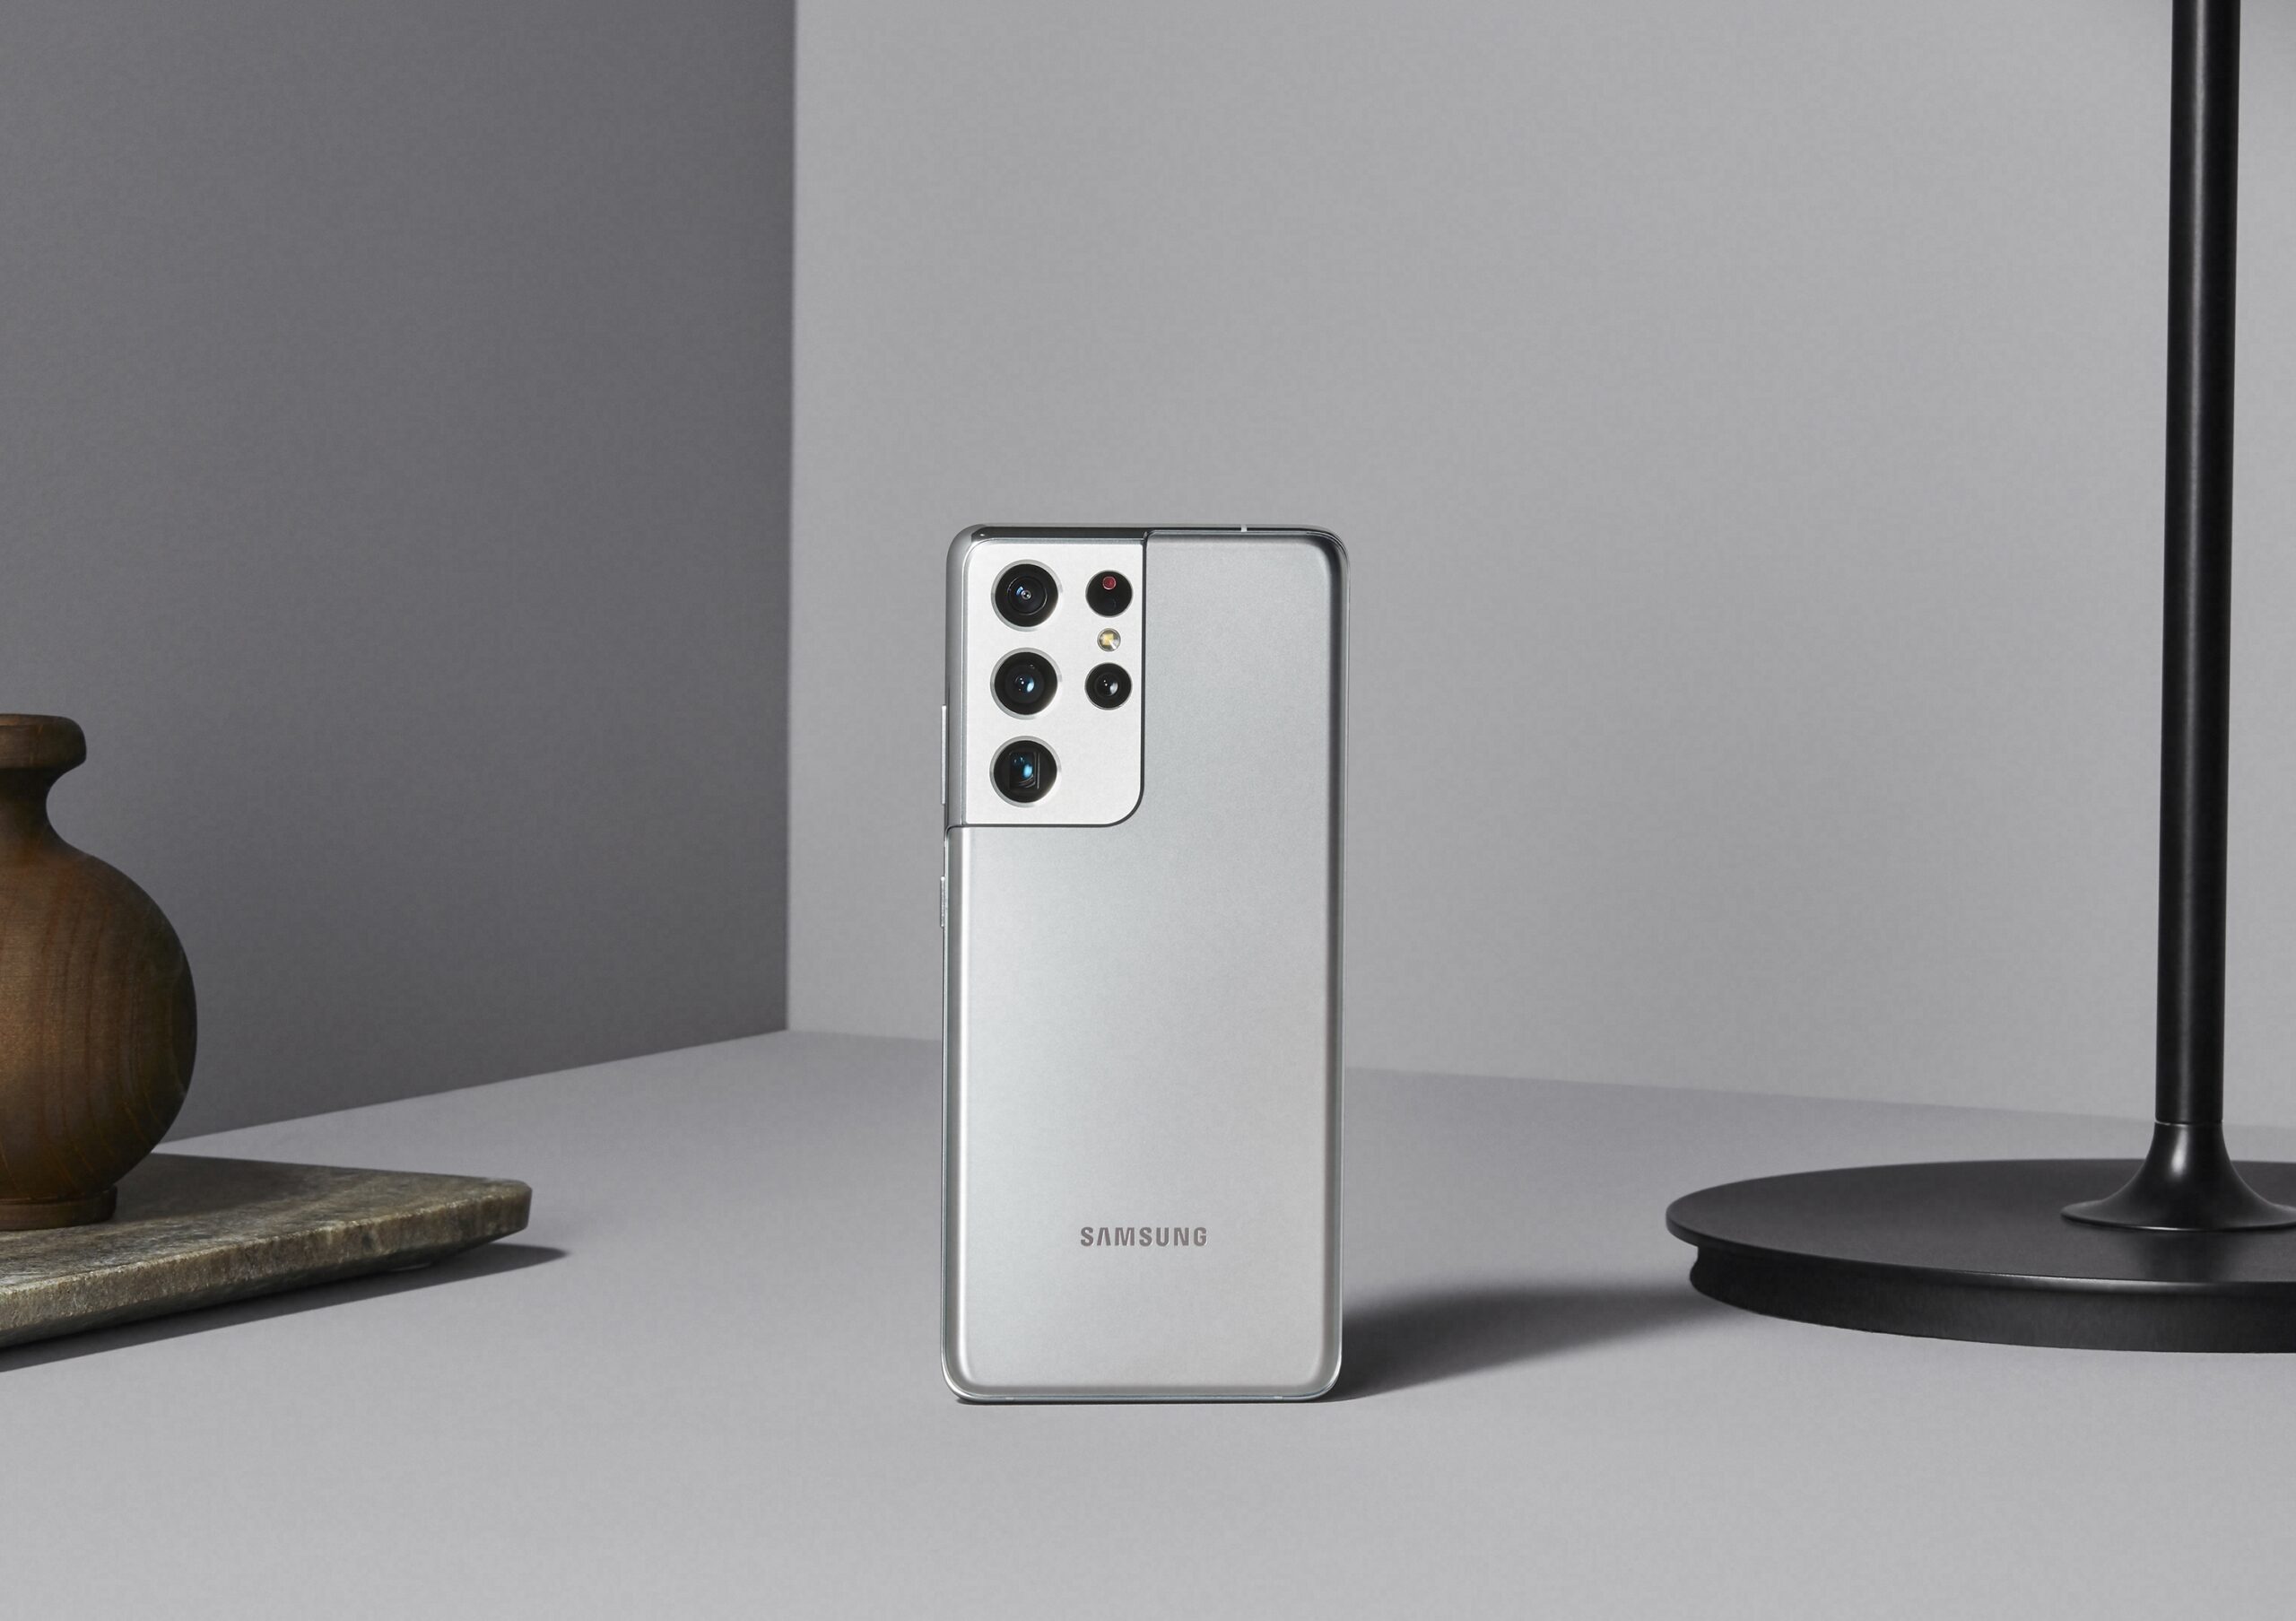 Samsung Electronics presentó el Galaxy S21 Ultra, un dispositivo insignia que supera los límites de lo que un teléfono inteligente puede hacer.